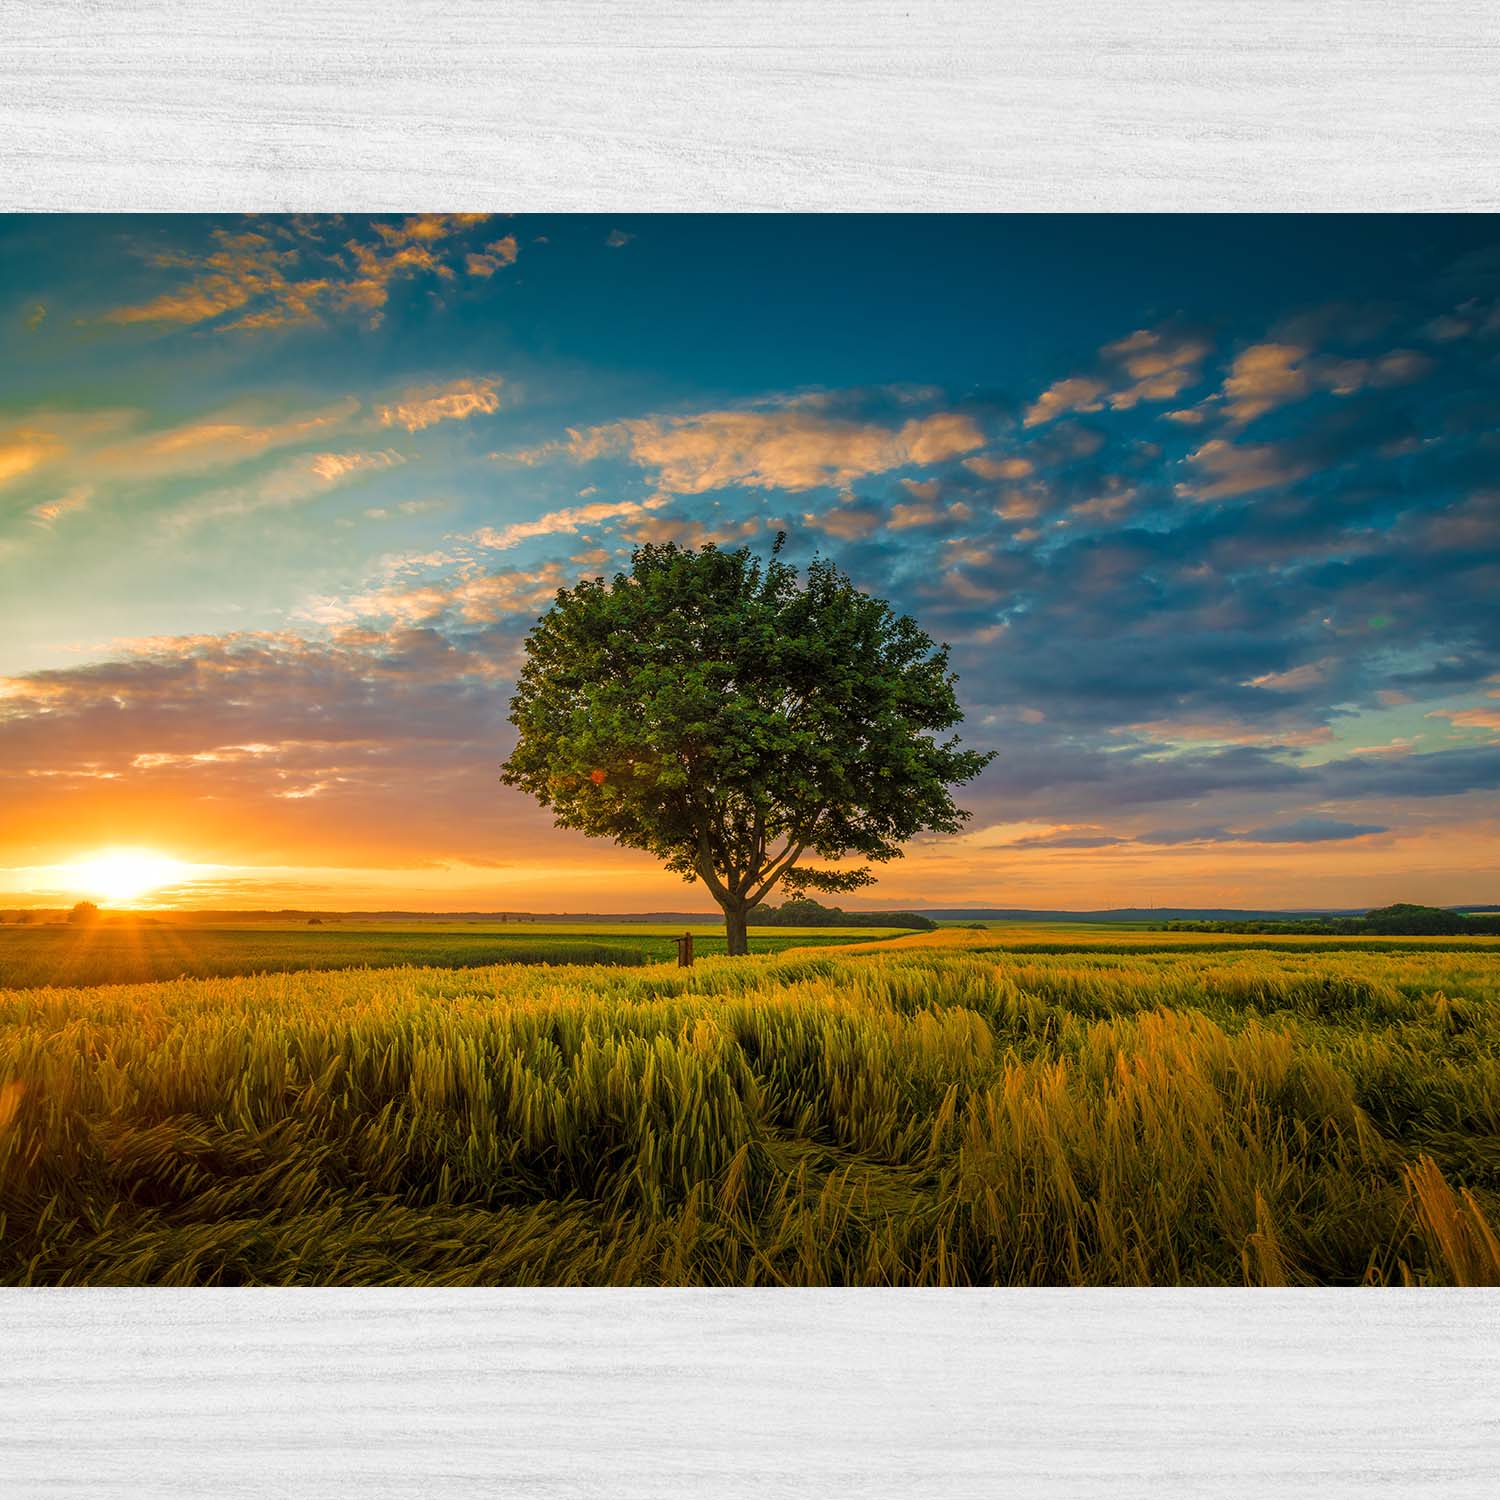 Širokouhlý záber jedného stromu rastúceho pod zatiahnutou oblohou pri západe slnka obklopený trávou